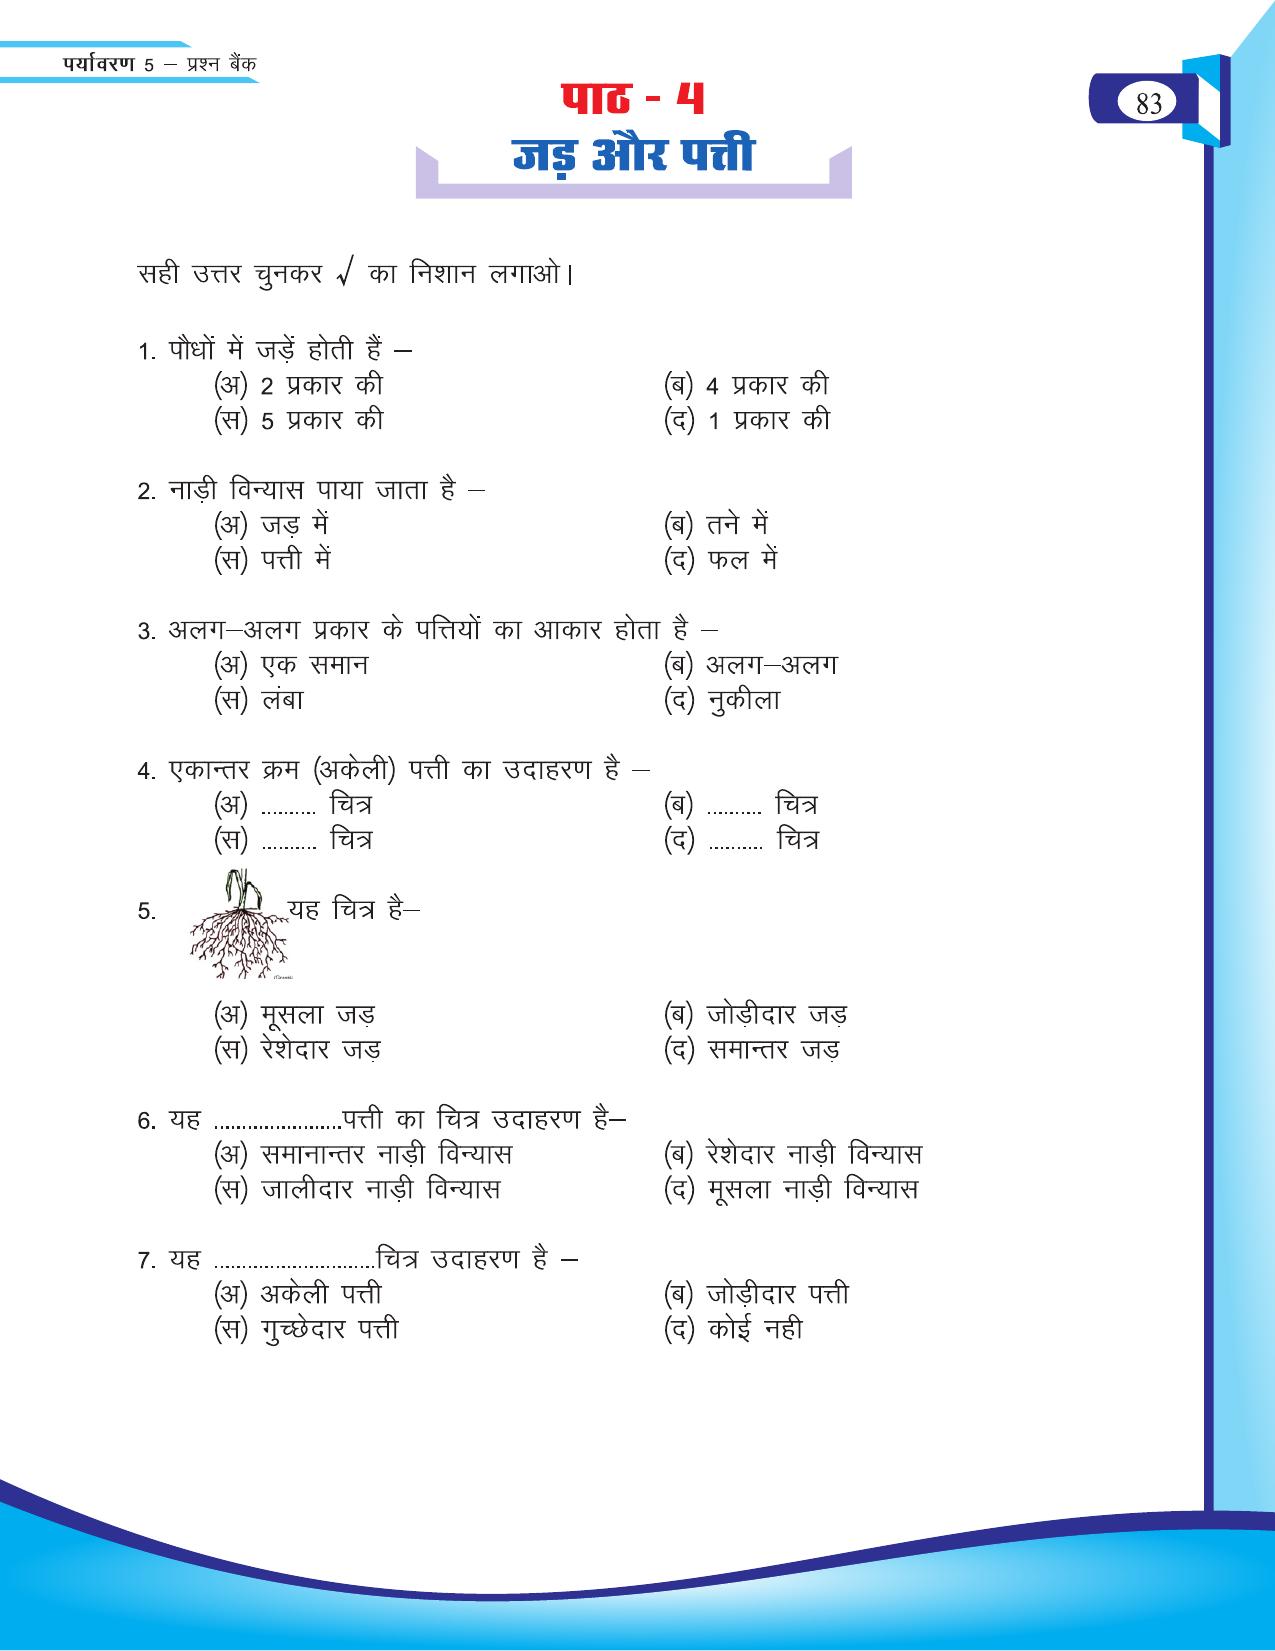 Chhattisgarh Board Class 5 EVS Question Bank 2015-16 - Page 9